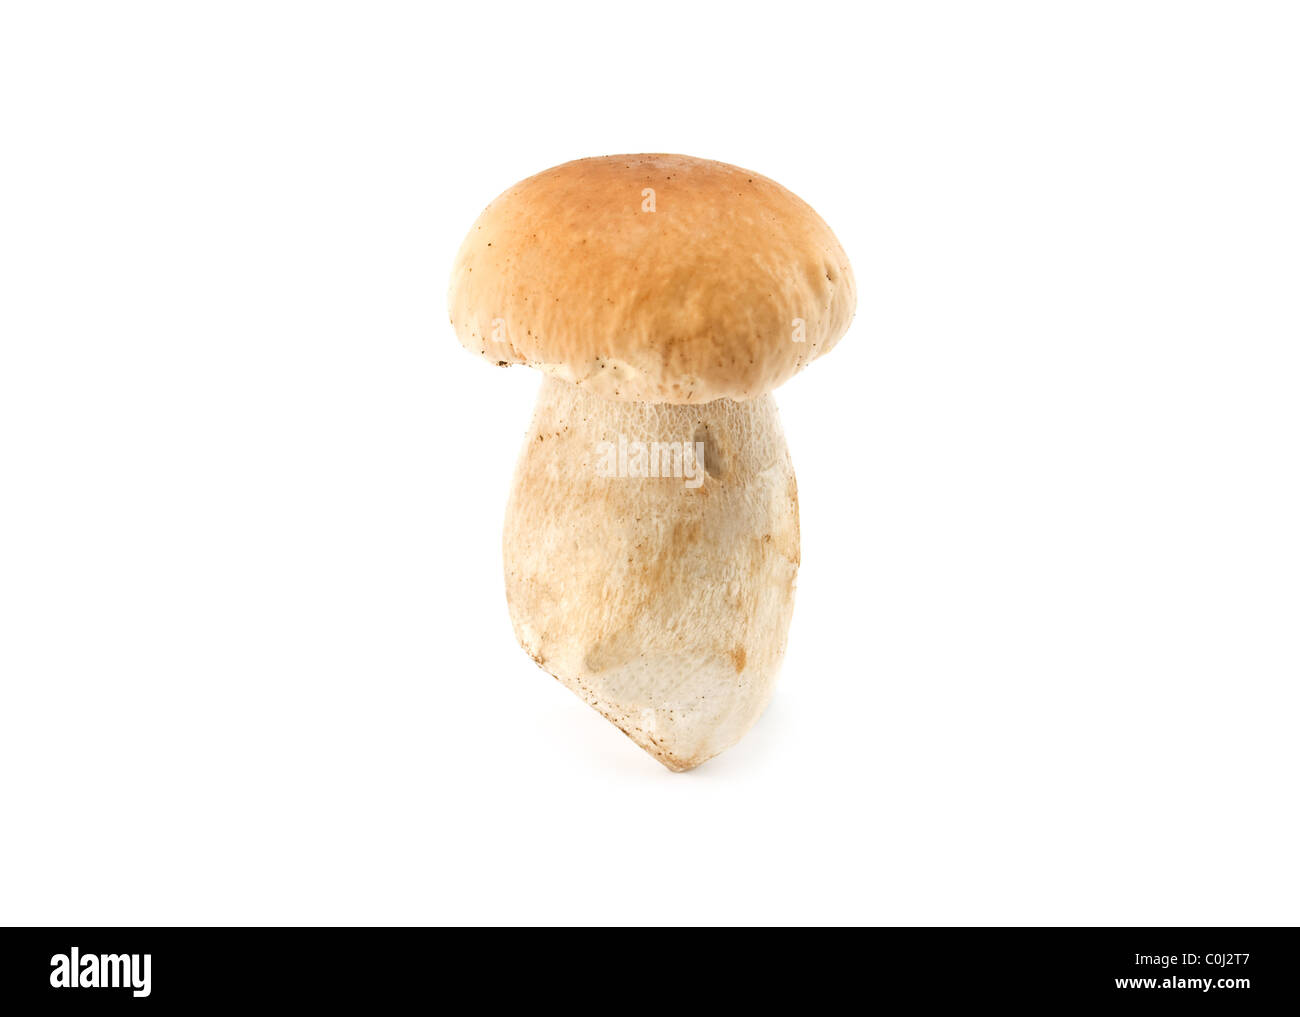 white mushroom isolated on a white background Stock Photo